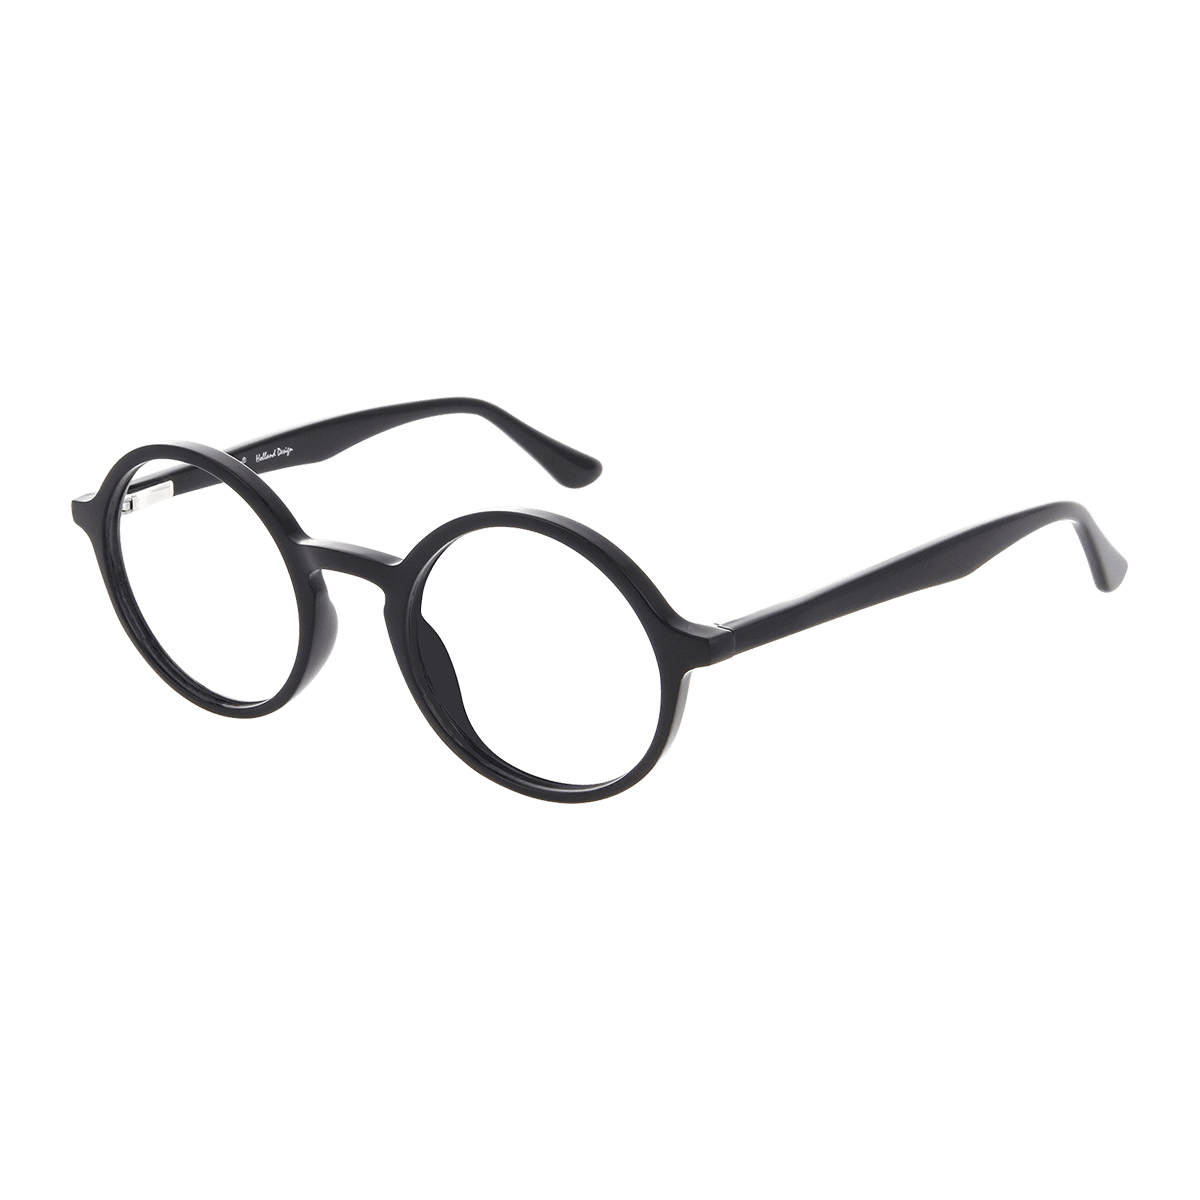 Ossa - Round Black Reading Glasses for Women